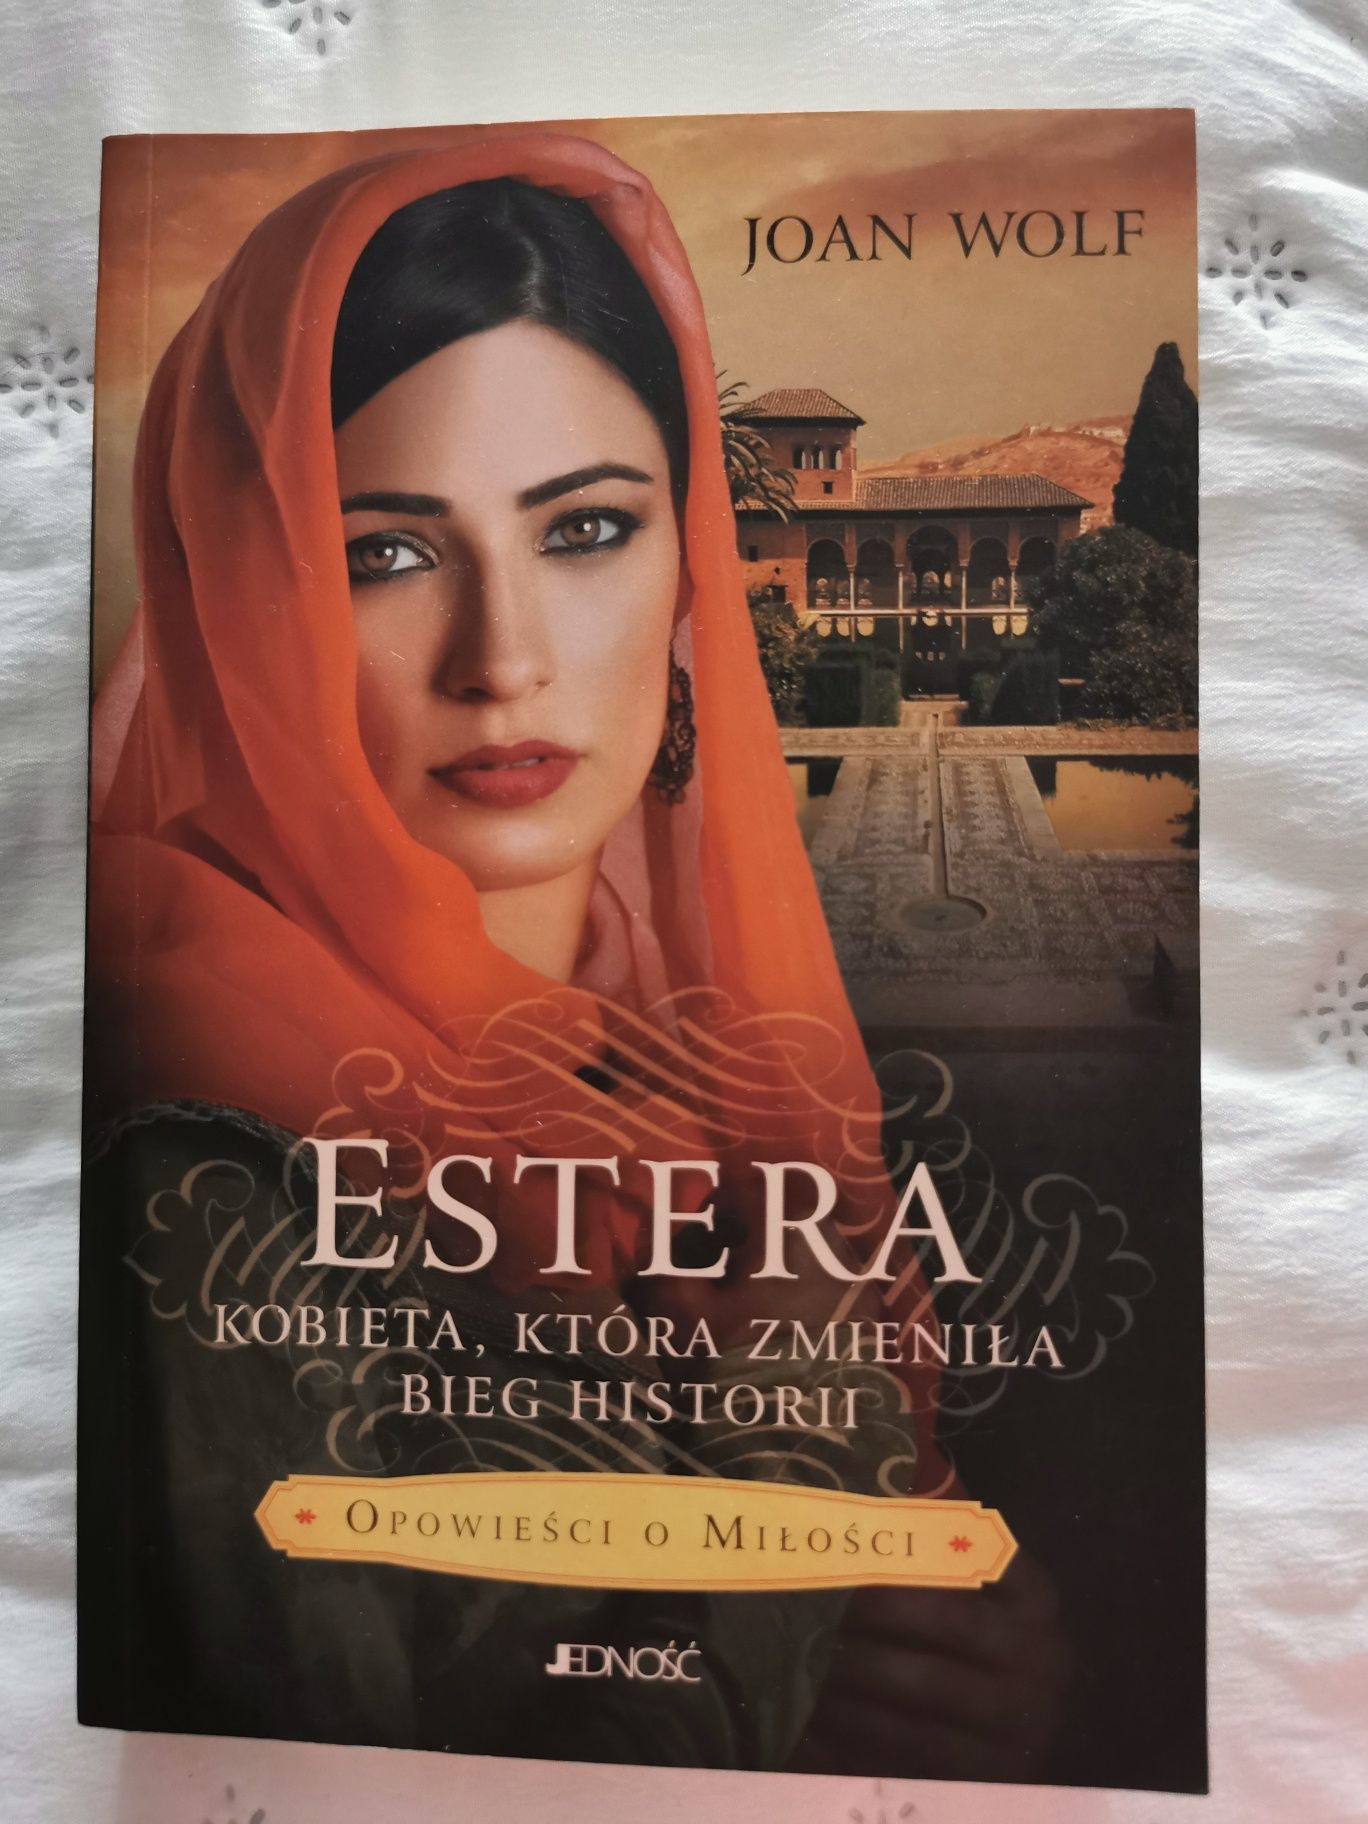 Estera - Kobieta która zmieniła bieg historii. Joan Wolf